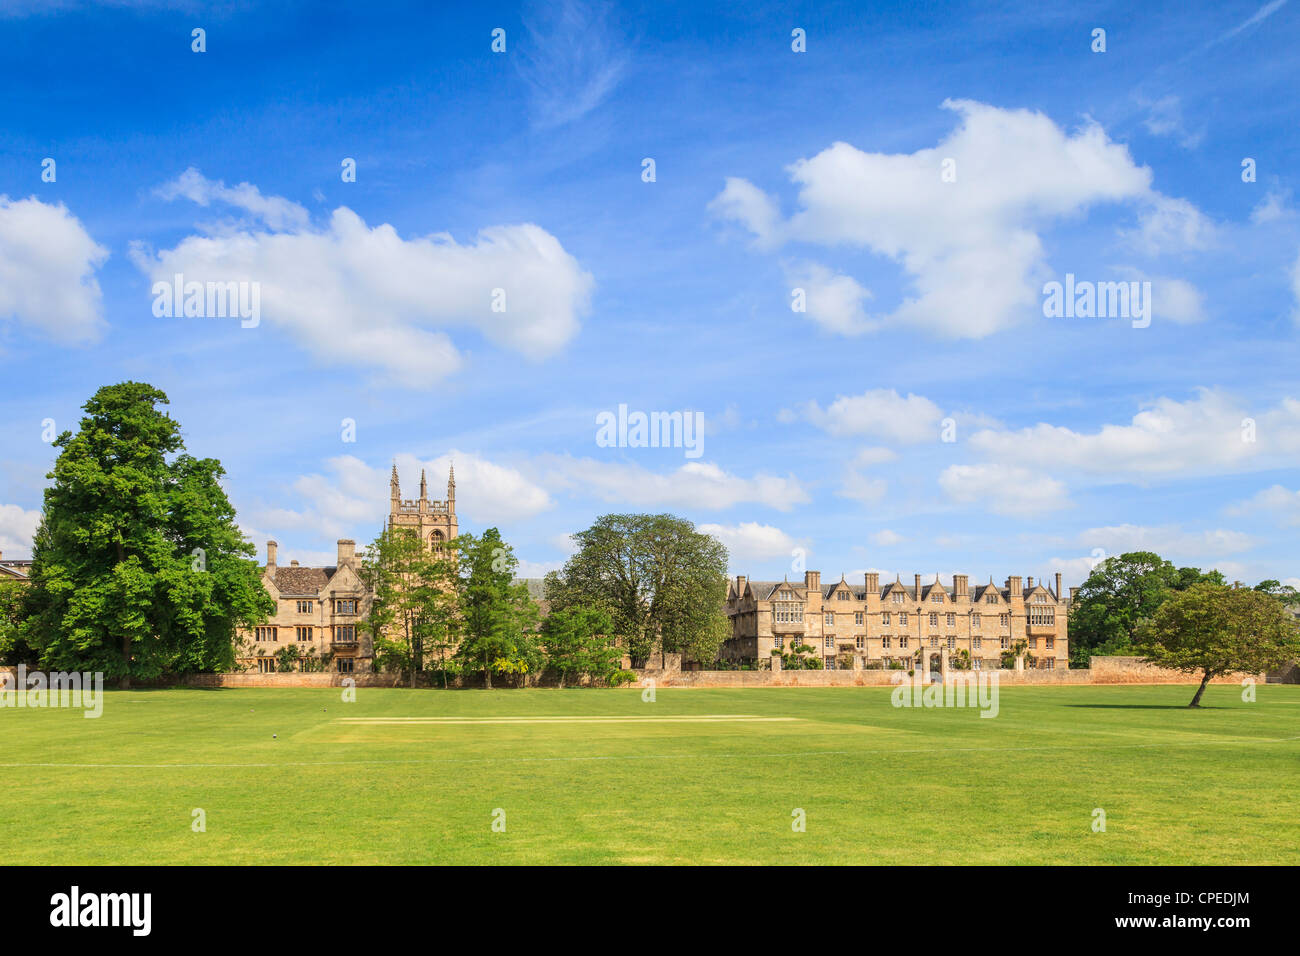 Partie de Merton College, Oxford, vu à travers le Christ Church Meadow. Banque D'Images